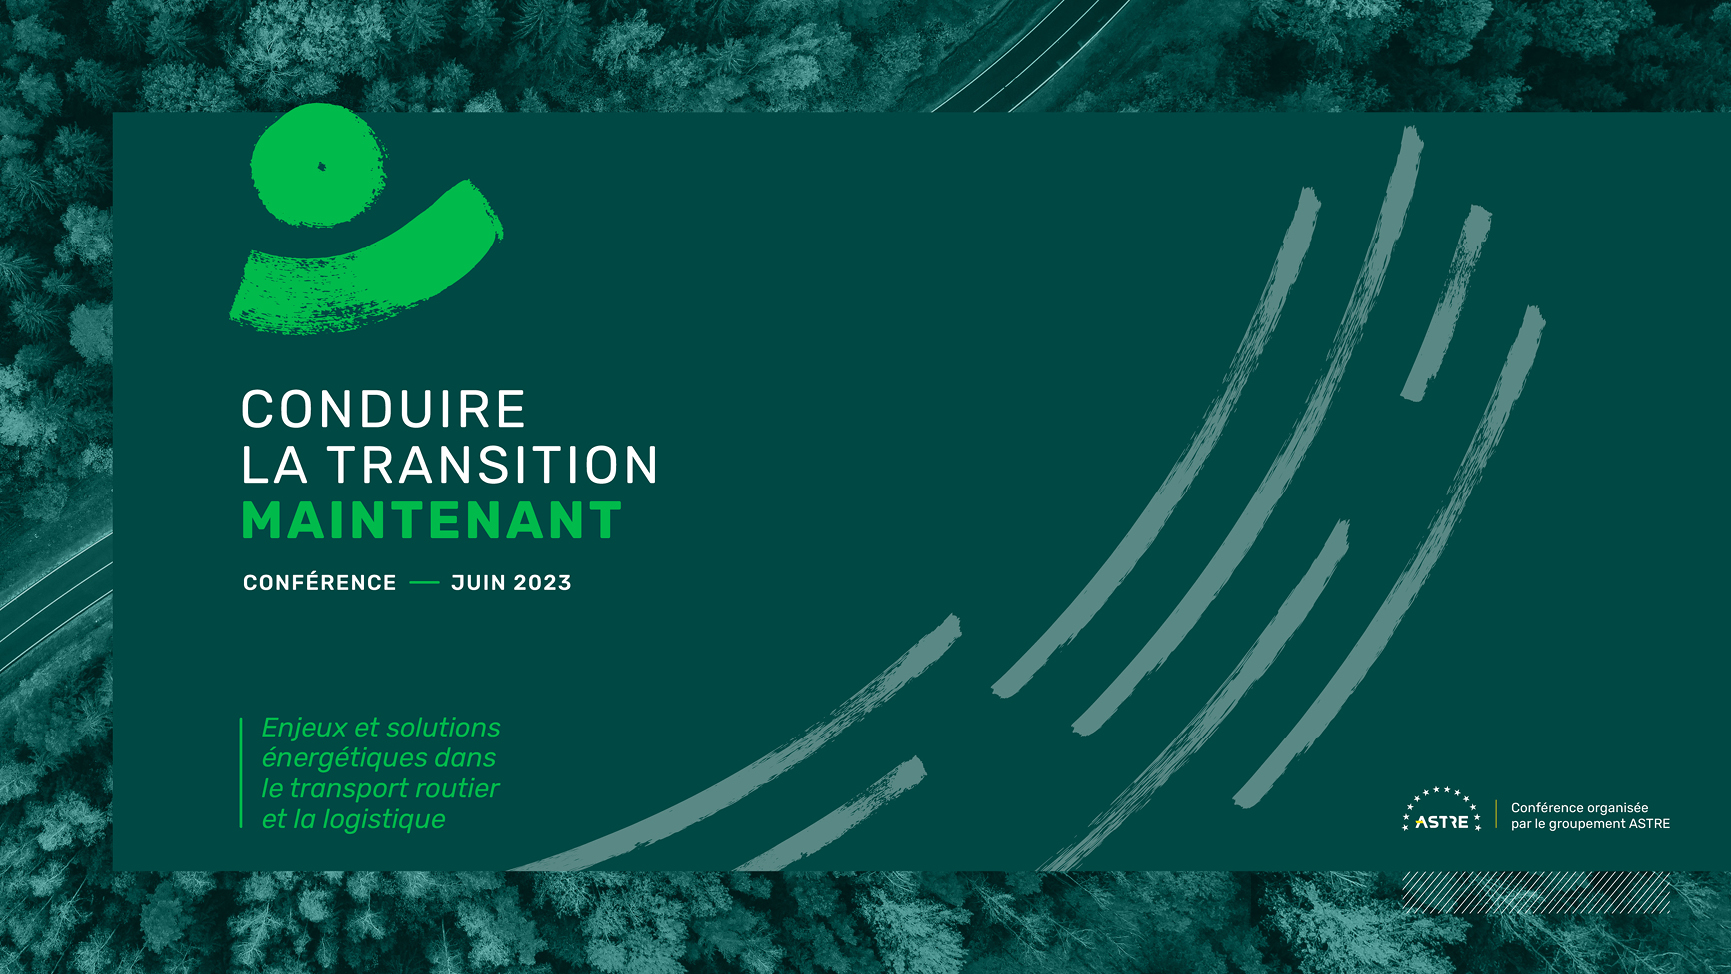 Visuel de l'événement avec le sigle, le titre CONDUIRE LA TRANSITION MAINTENANT, le logo du client, l'univers graphique vert